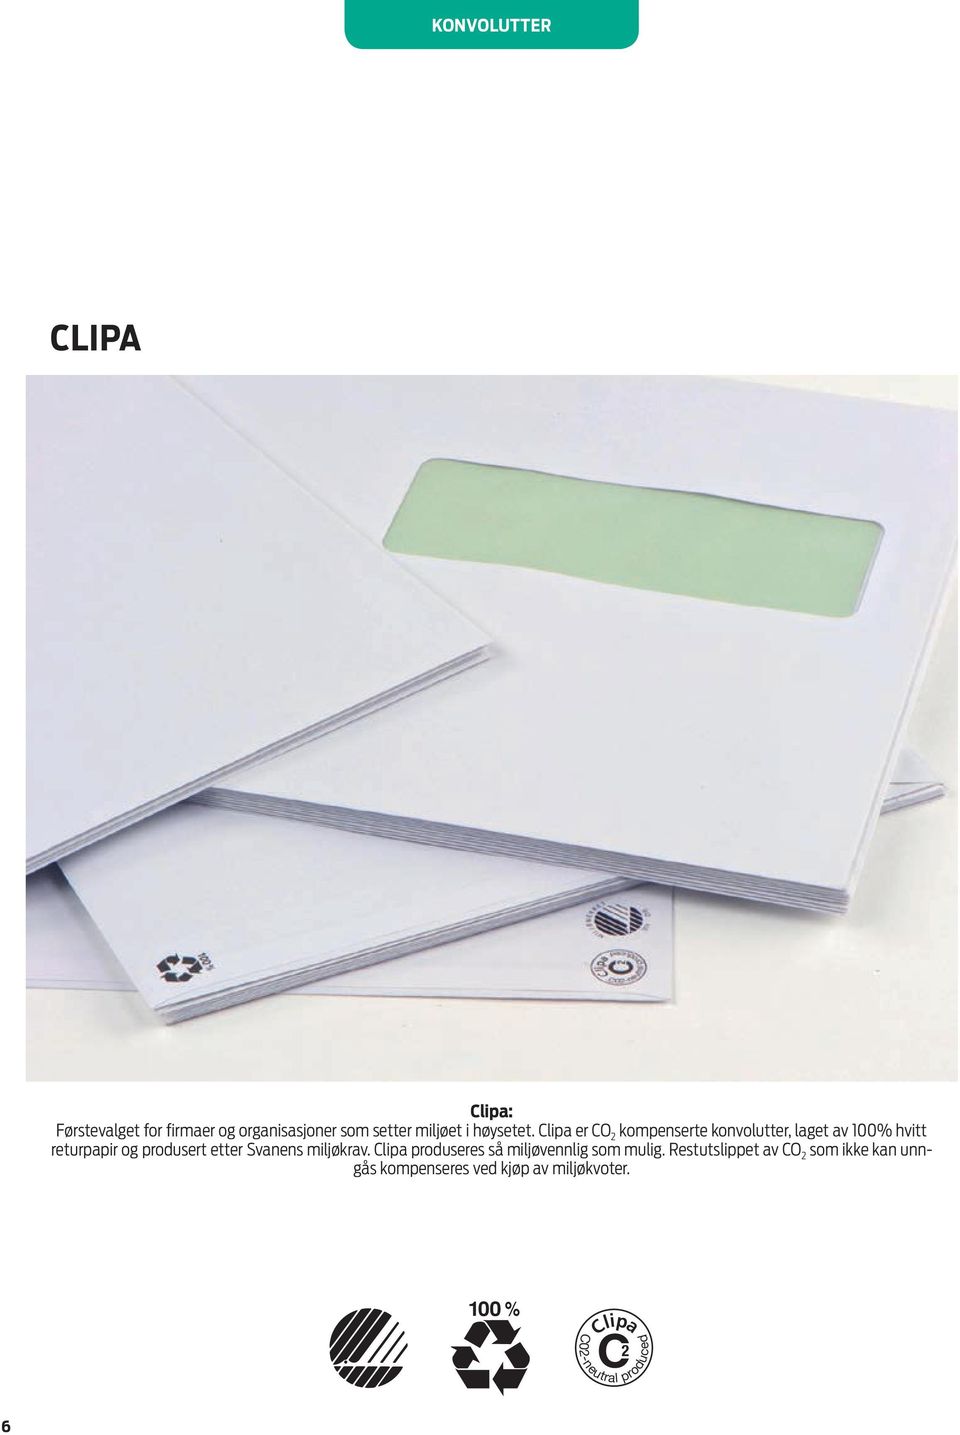 Clipa er CO kompenserte konvolutter, laget av 100% hvitt returpapir og produsert etter